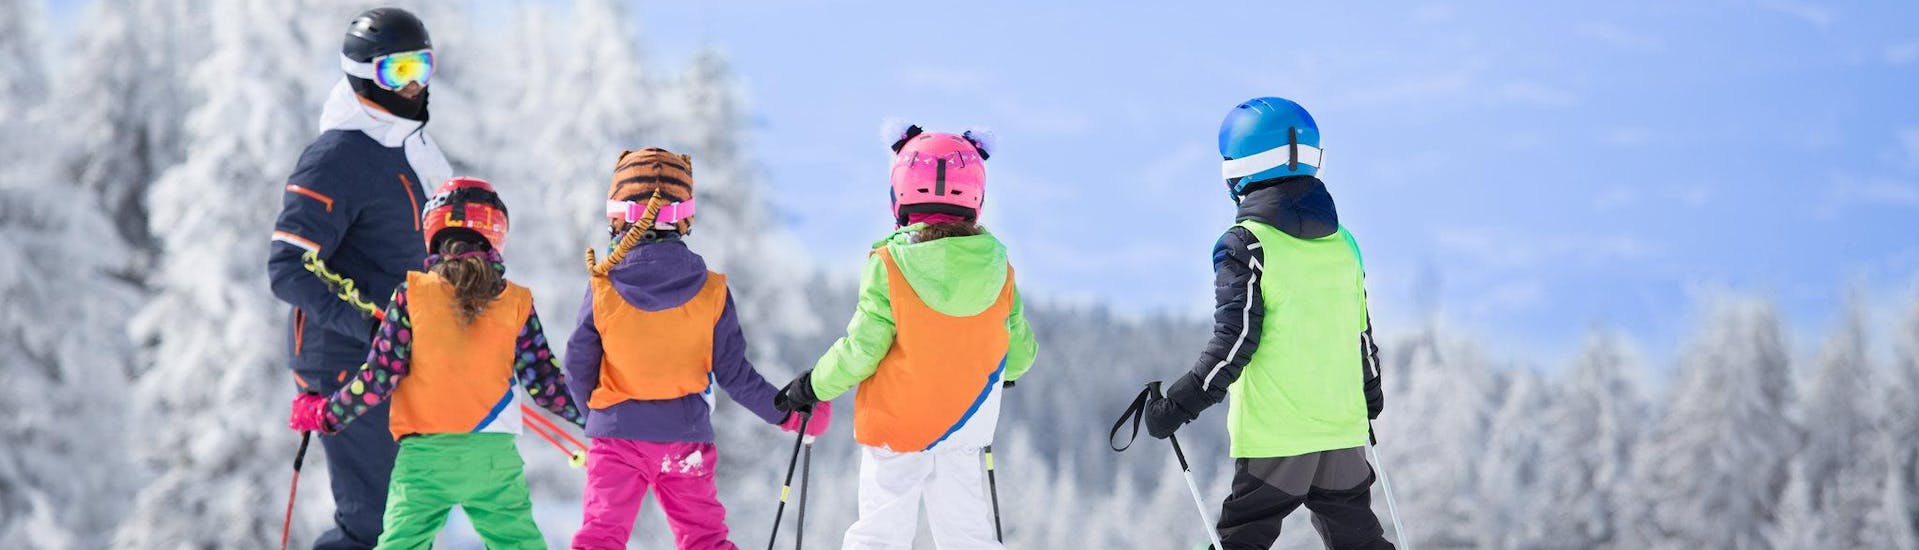 Drie skiërs bereiden zich voor op een skiles met een Engelstalige skileraar in het skigebied van Lanslevillard.